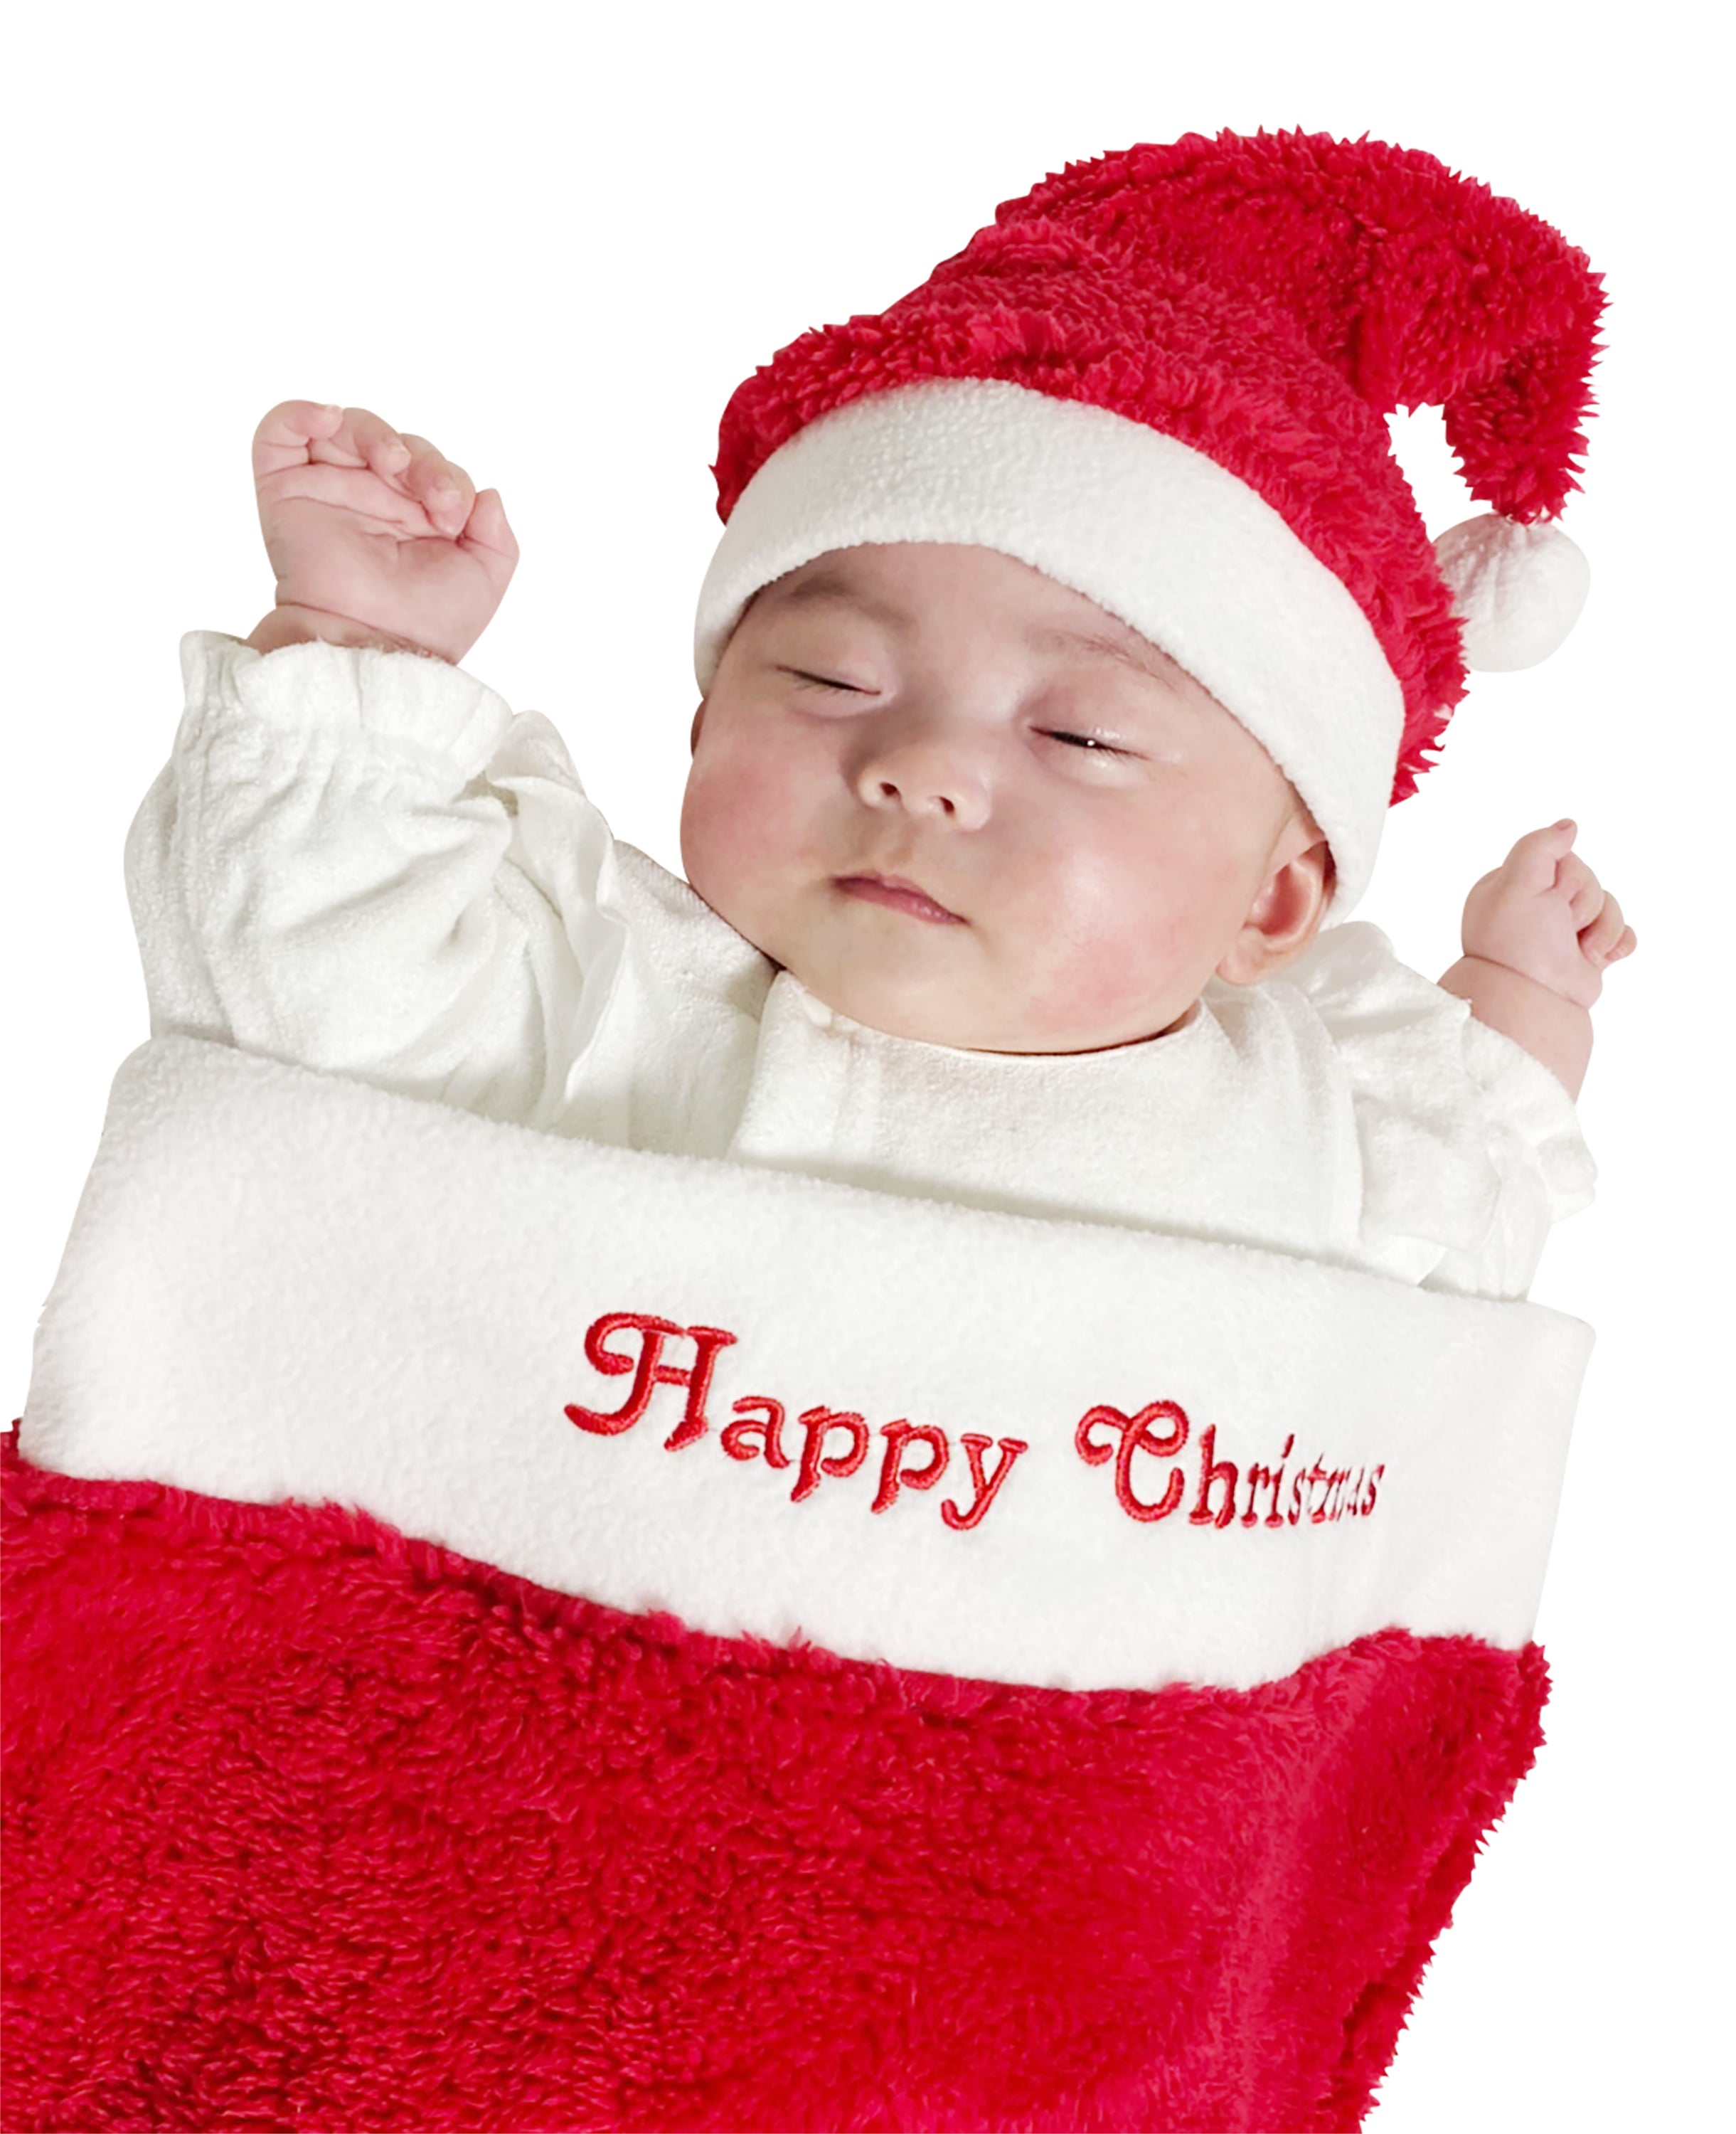 新品★クリスマス靴下サンタ帽セットニューボーンフォト　新生児　衣装